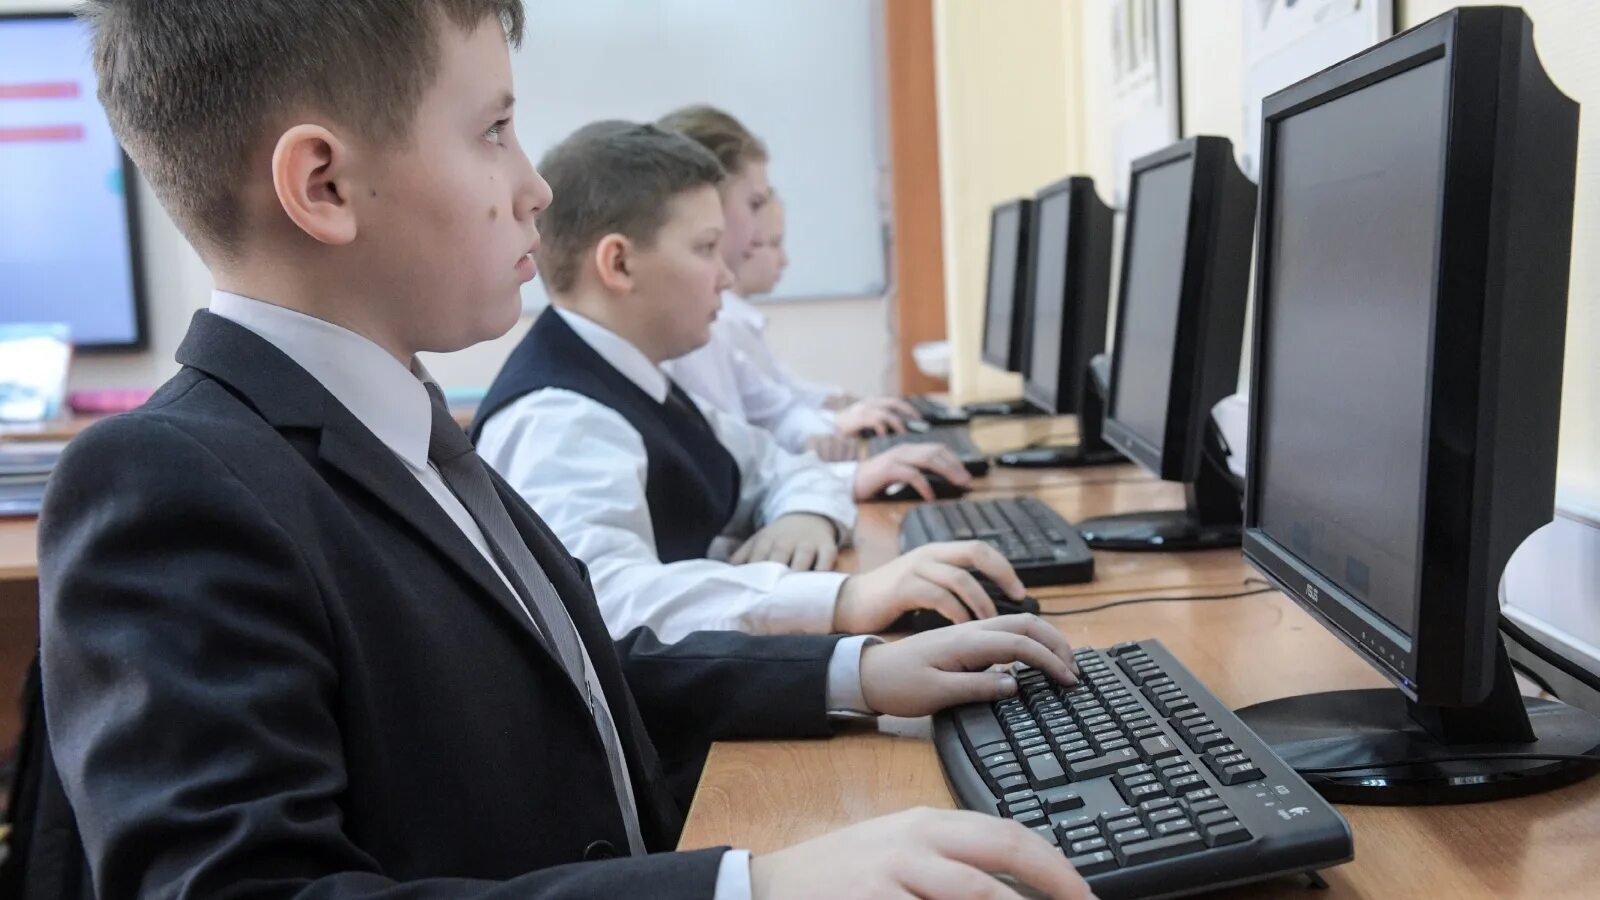 1 класс 1 ученик 1 компьютер. Ребенок за компьютером. Компьютерный класс. Школьники на информатике. Ученик за компьютером.